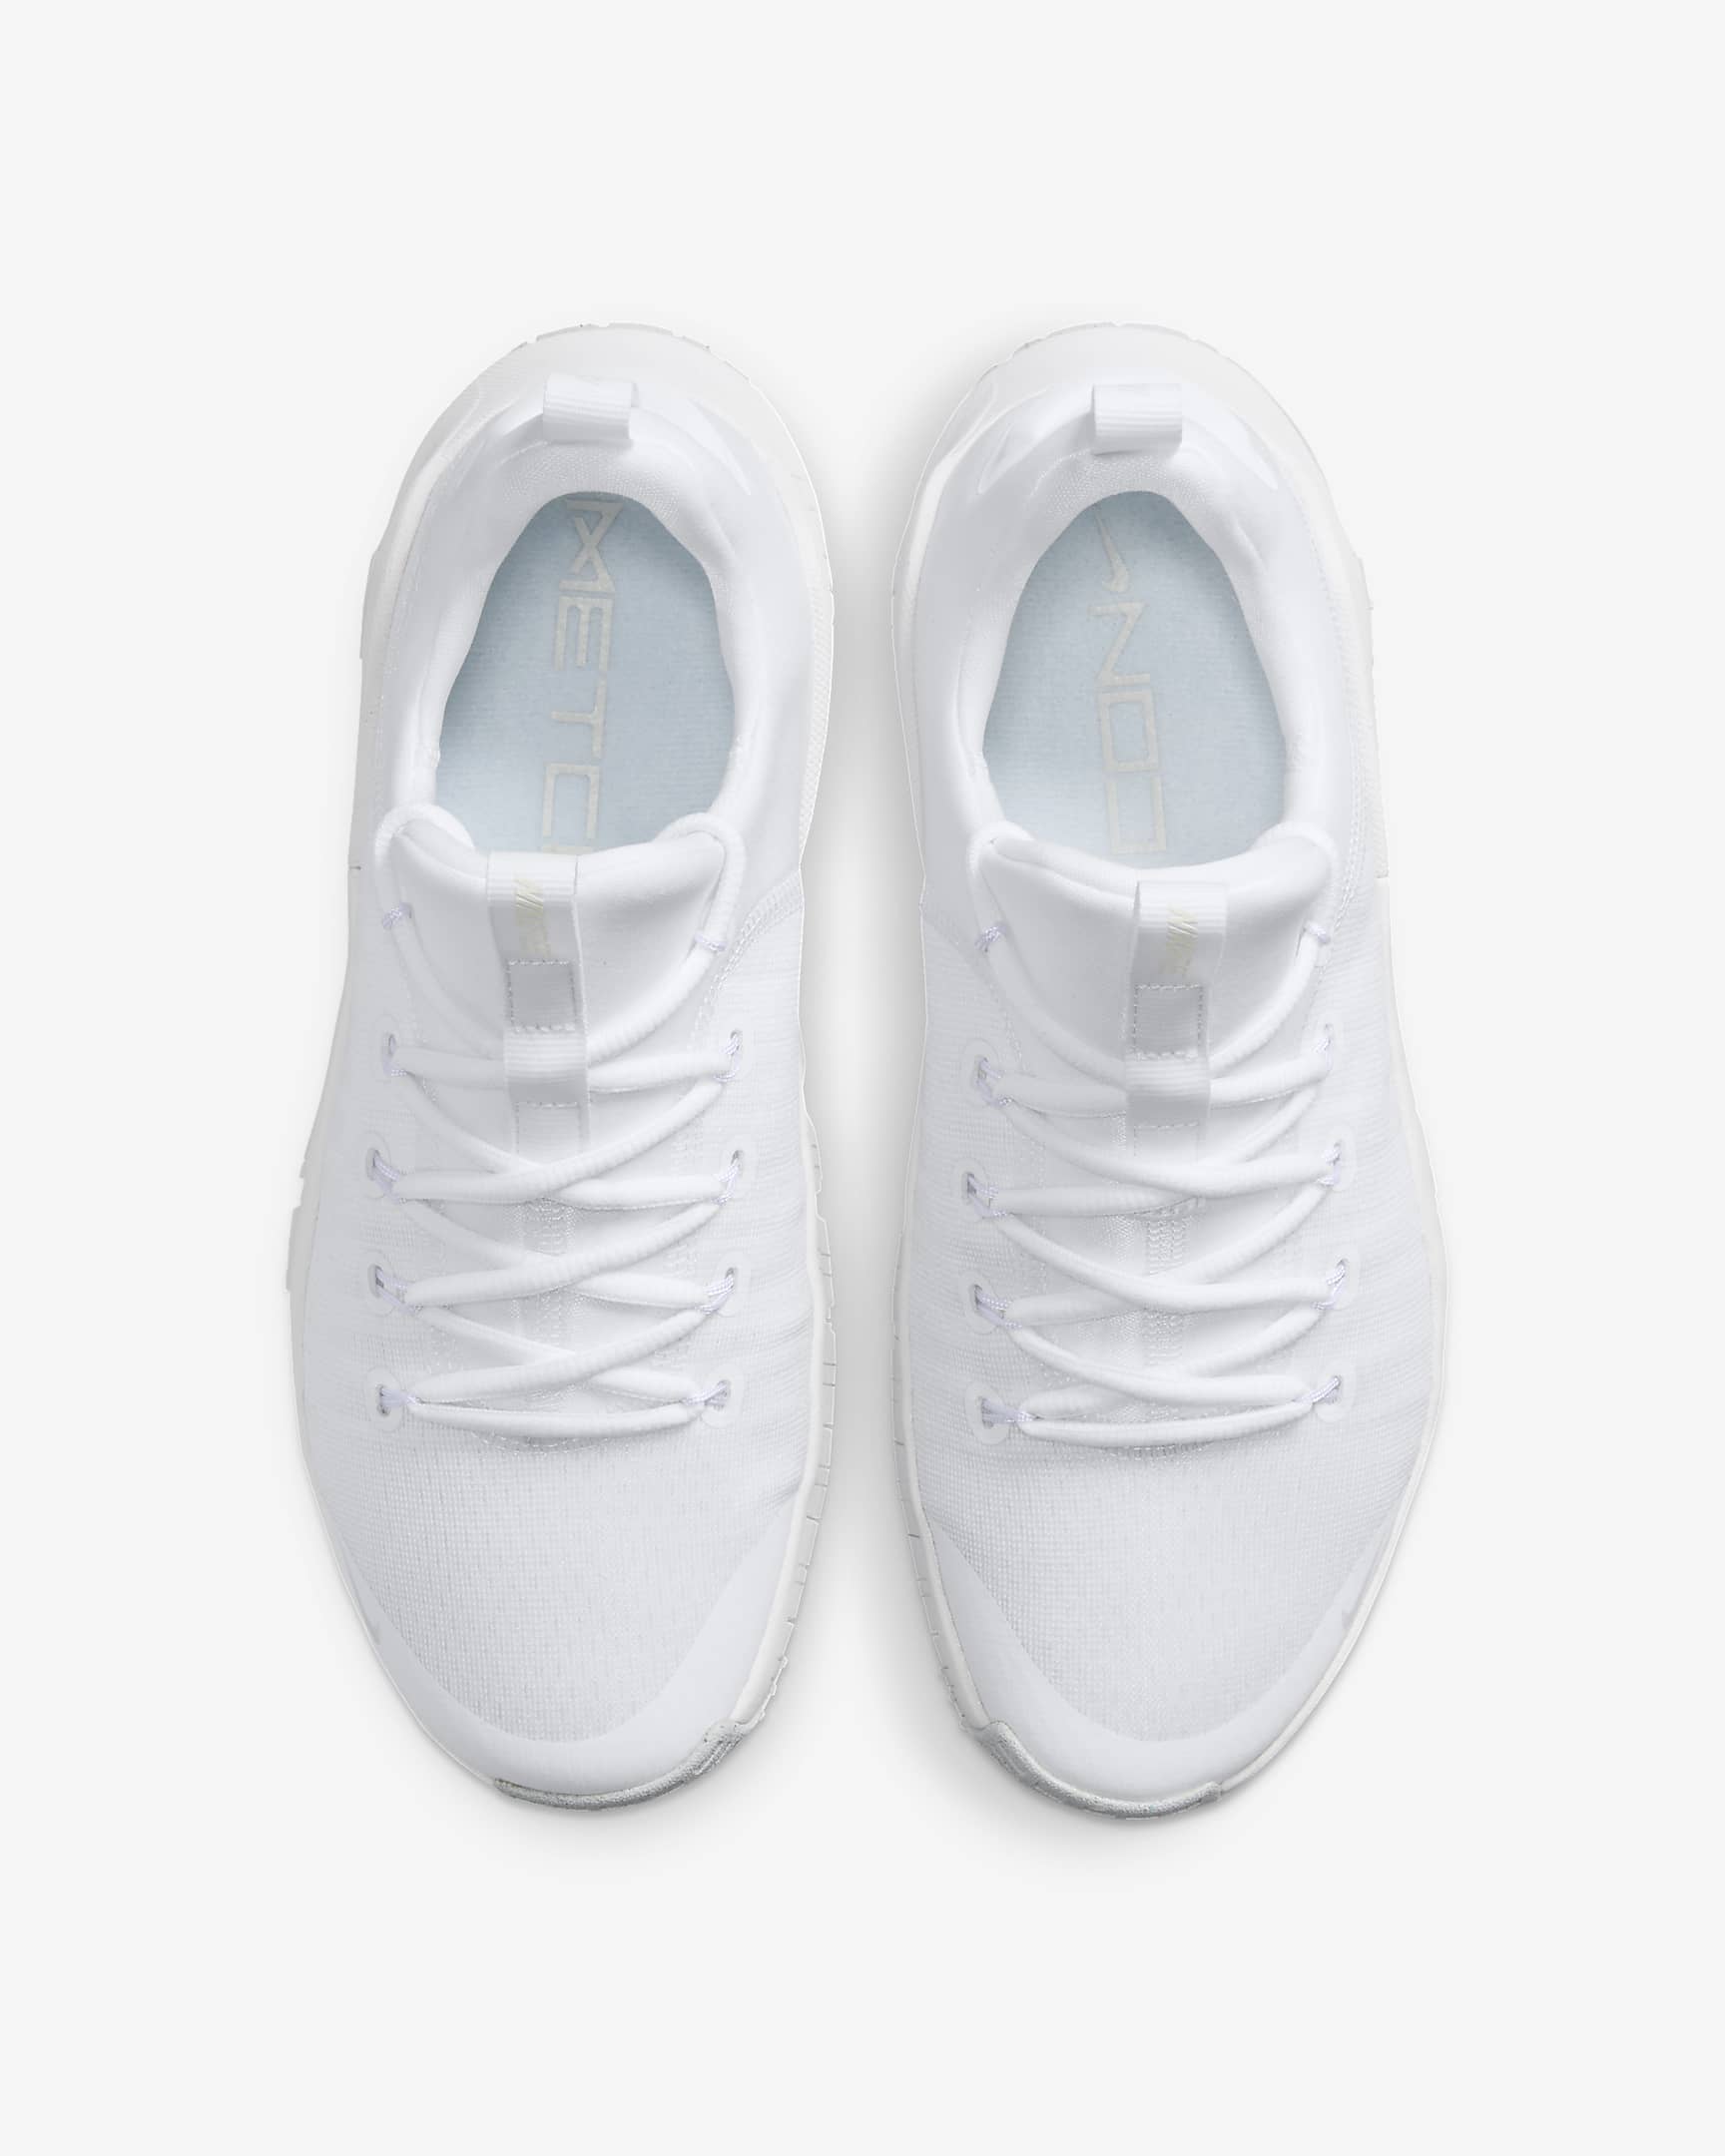 Nike Free Metcon 6 Women's Workout Shoes - White/Platinum Tint